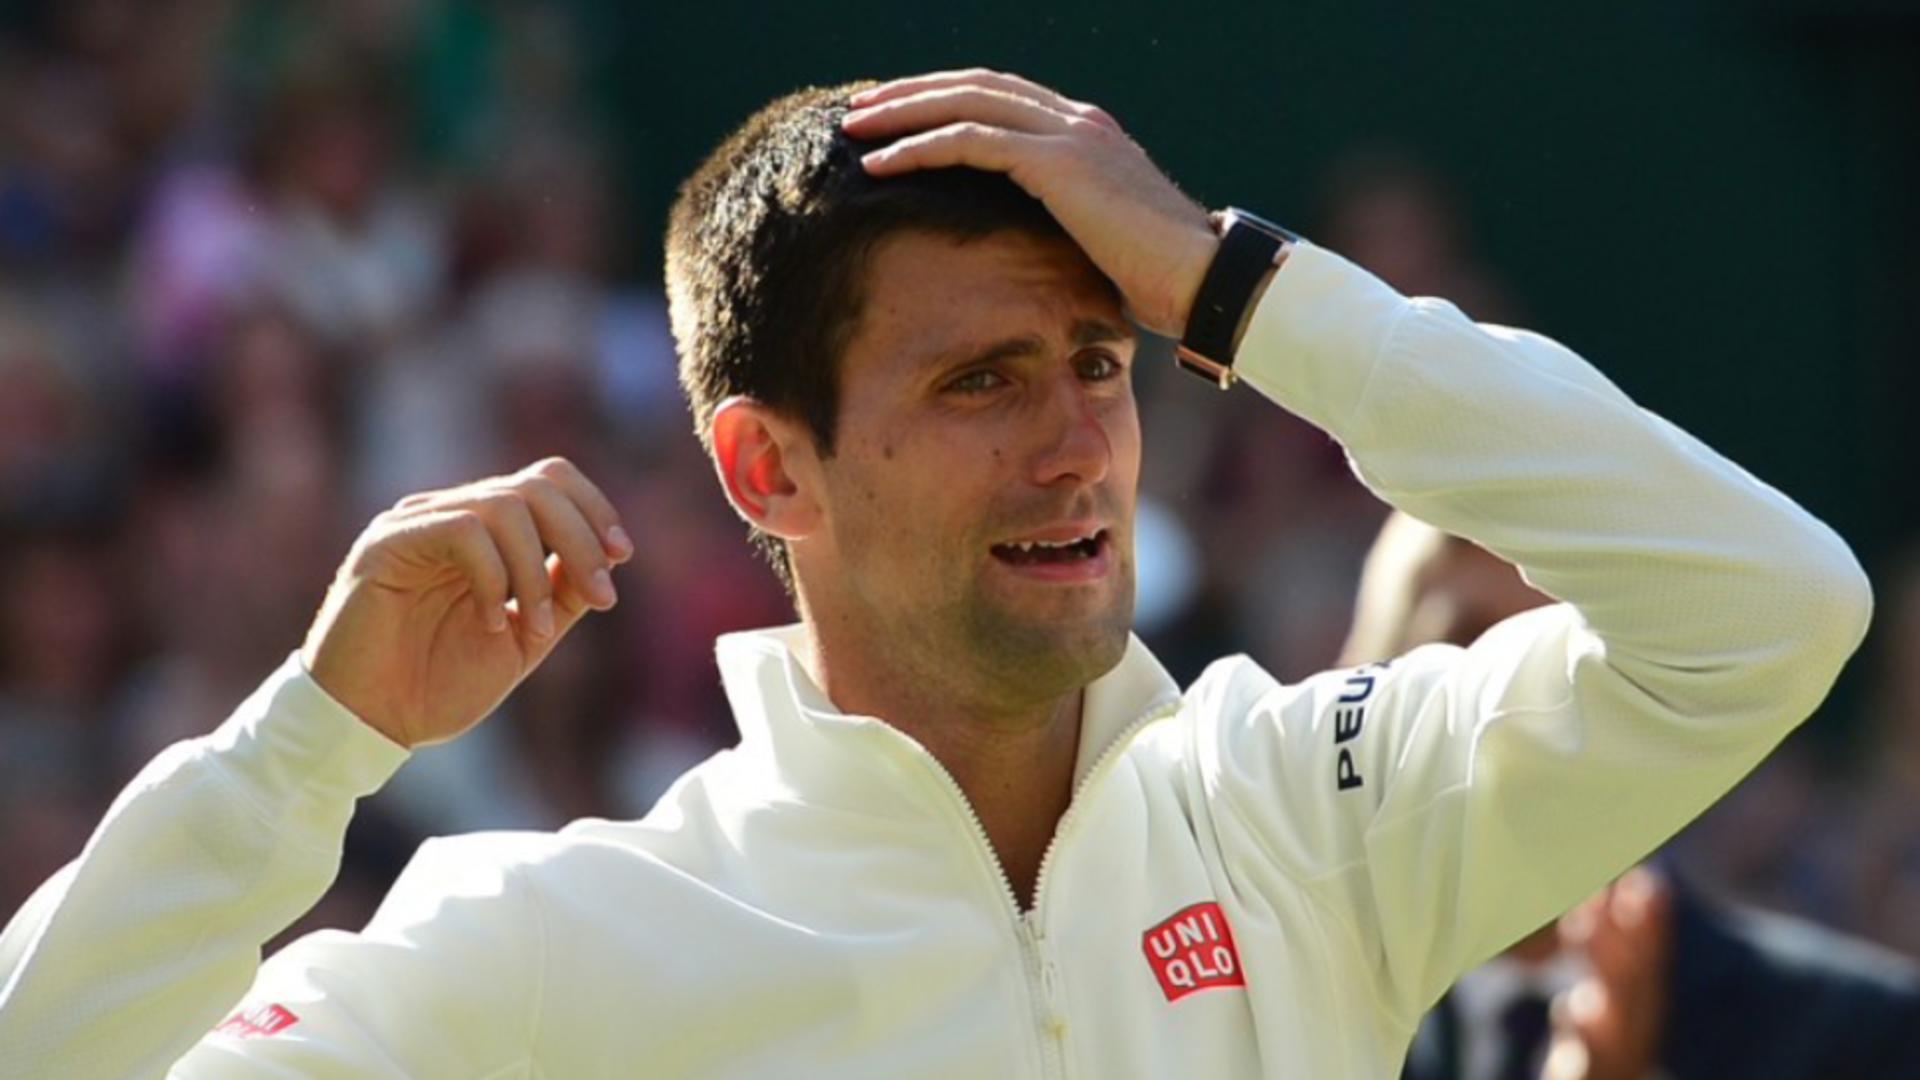 Prima reacție a lui Novak Djokovic după decizia de expulzare - Ce spune de participarea la Australian Open